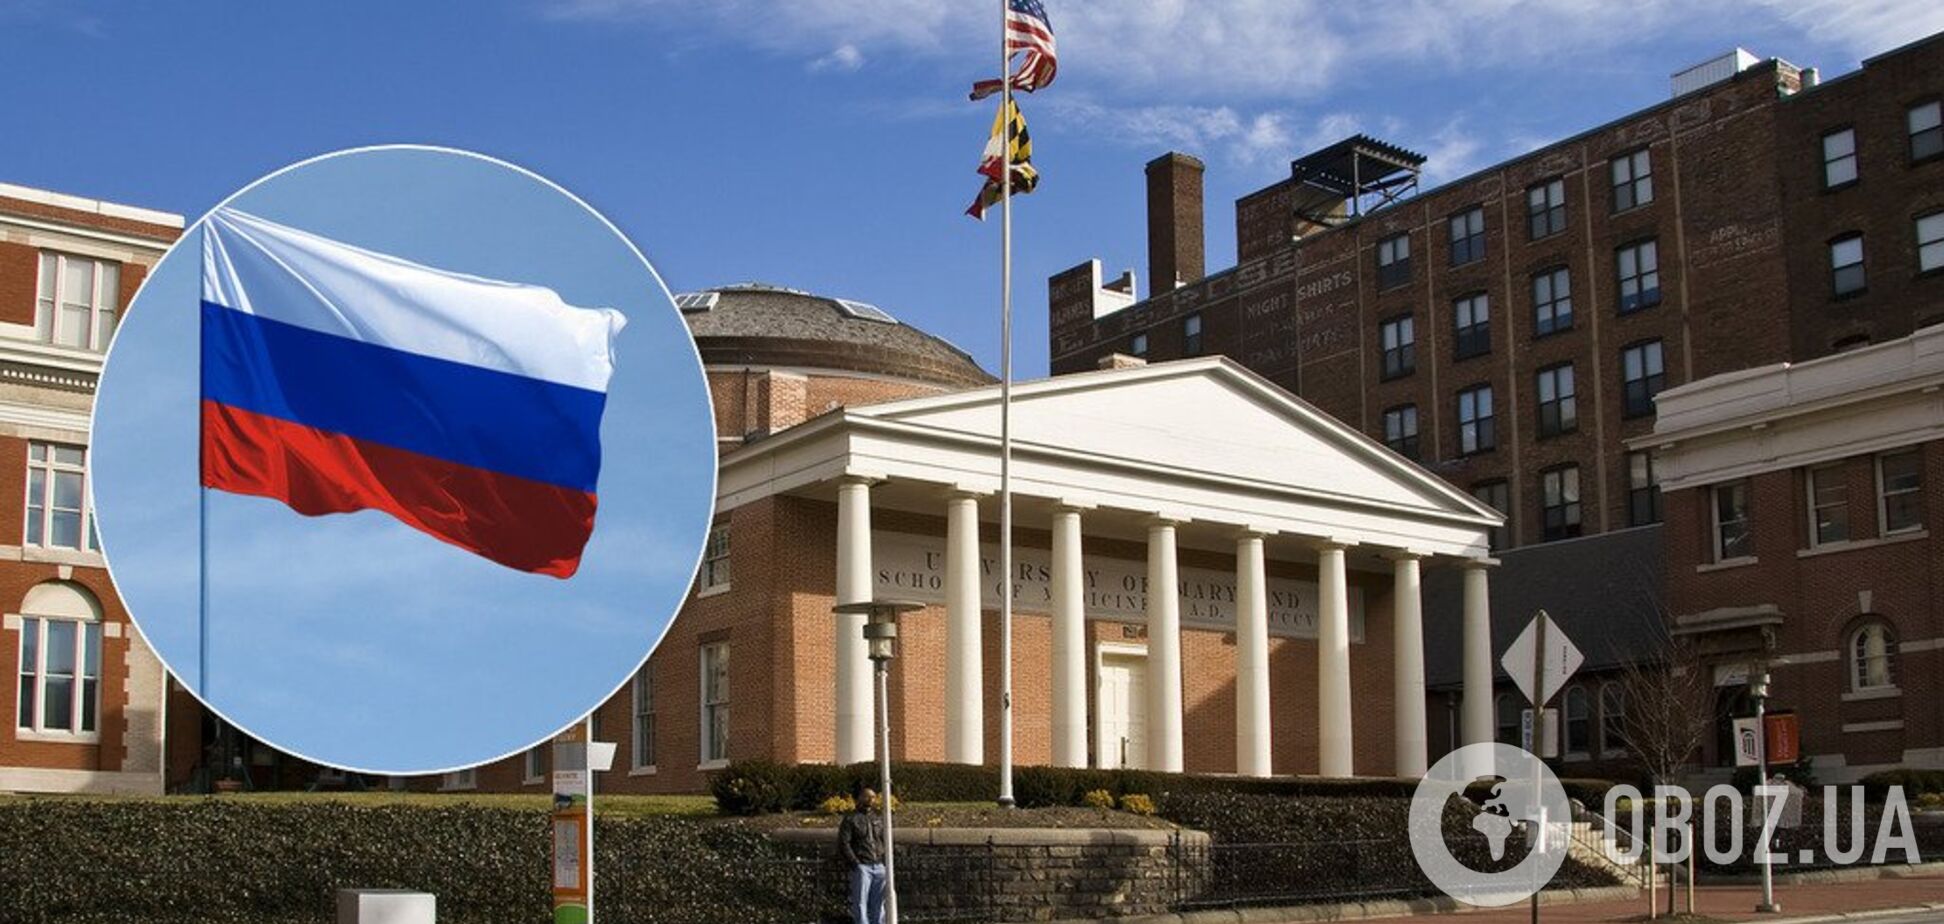 Получали деньги и подарки из России: университеты США попали в скандал